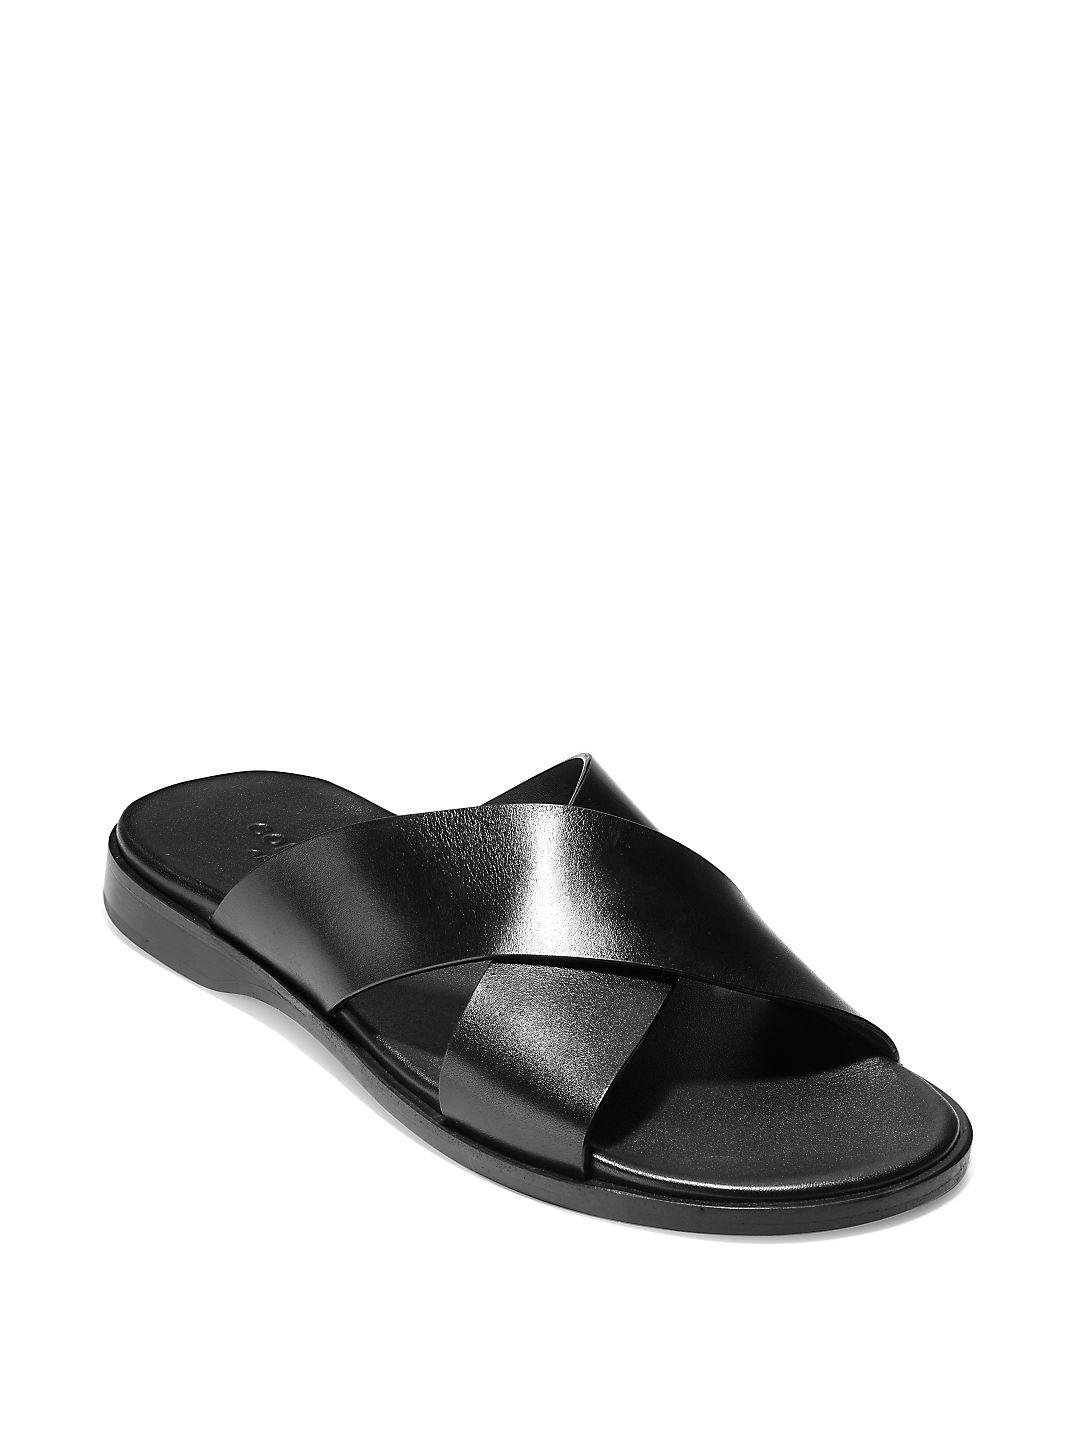 Cole Haan Goldwyn Leather Criss Cross Sandals in Black for Men - Lyst